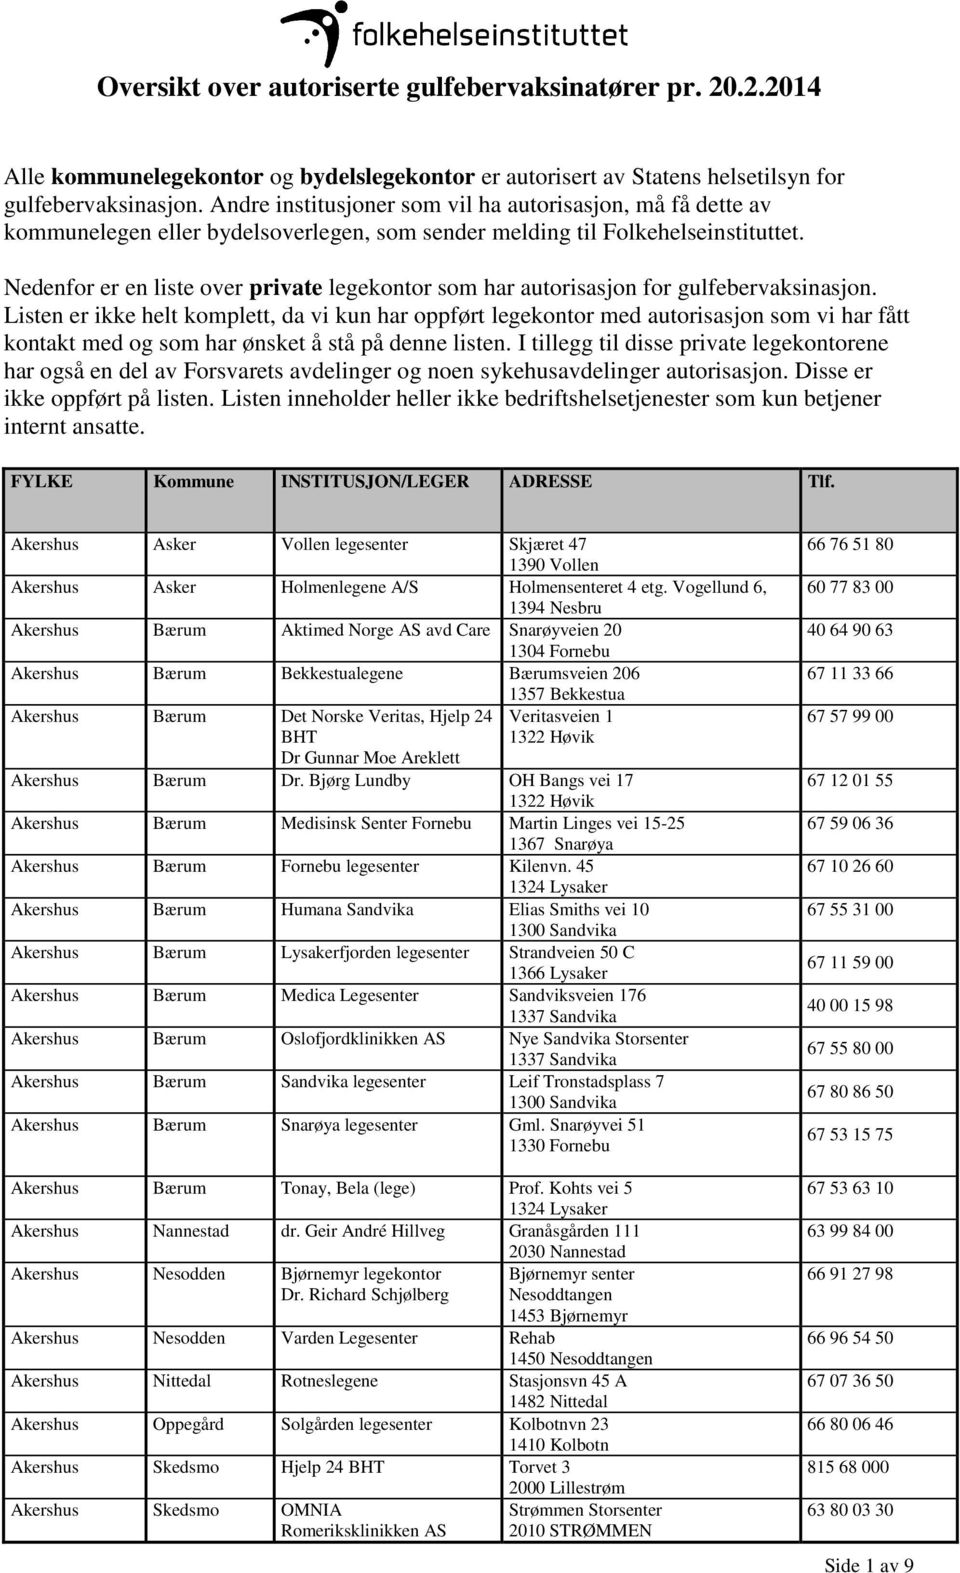 Nedenfor er en liste over private legekontor som har autorisasjon for gulfebervaksinasjon.